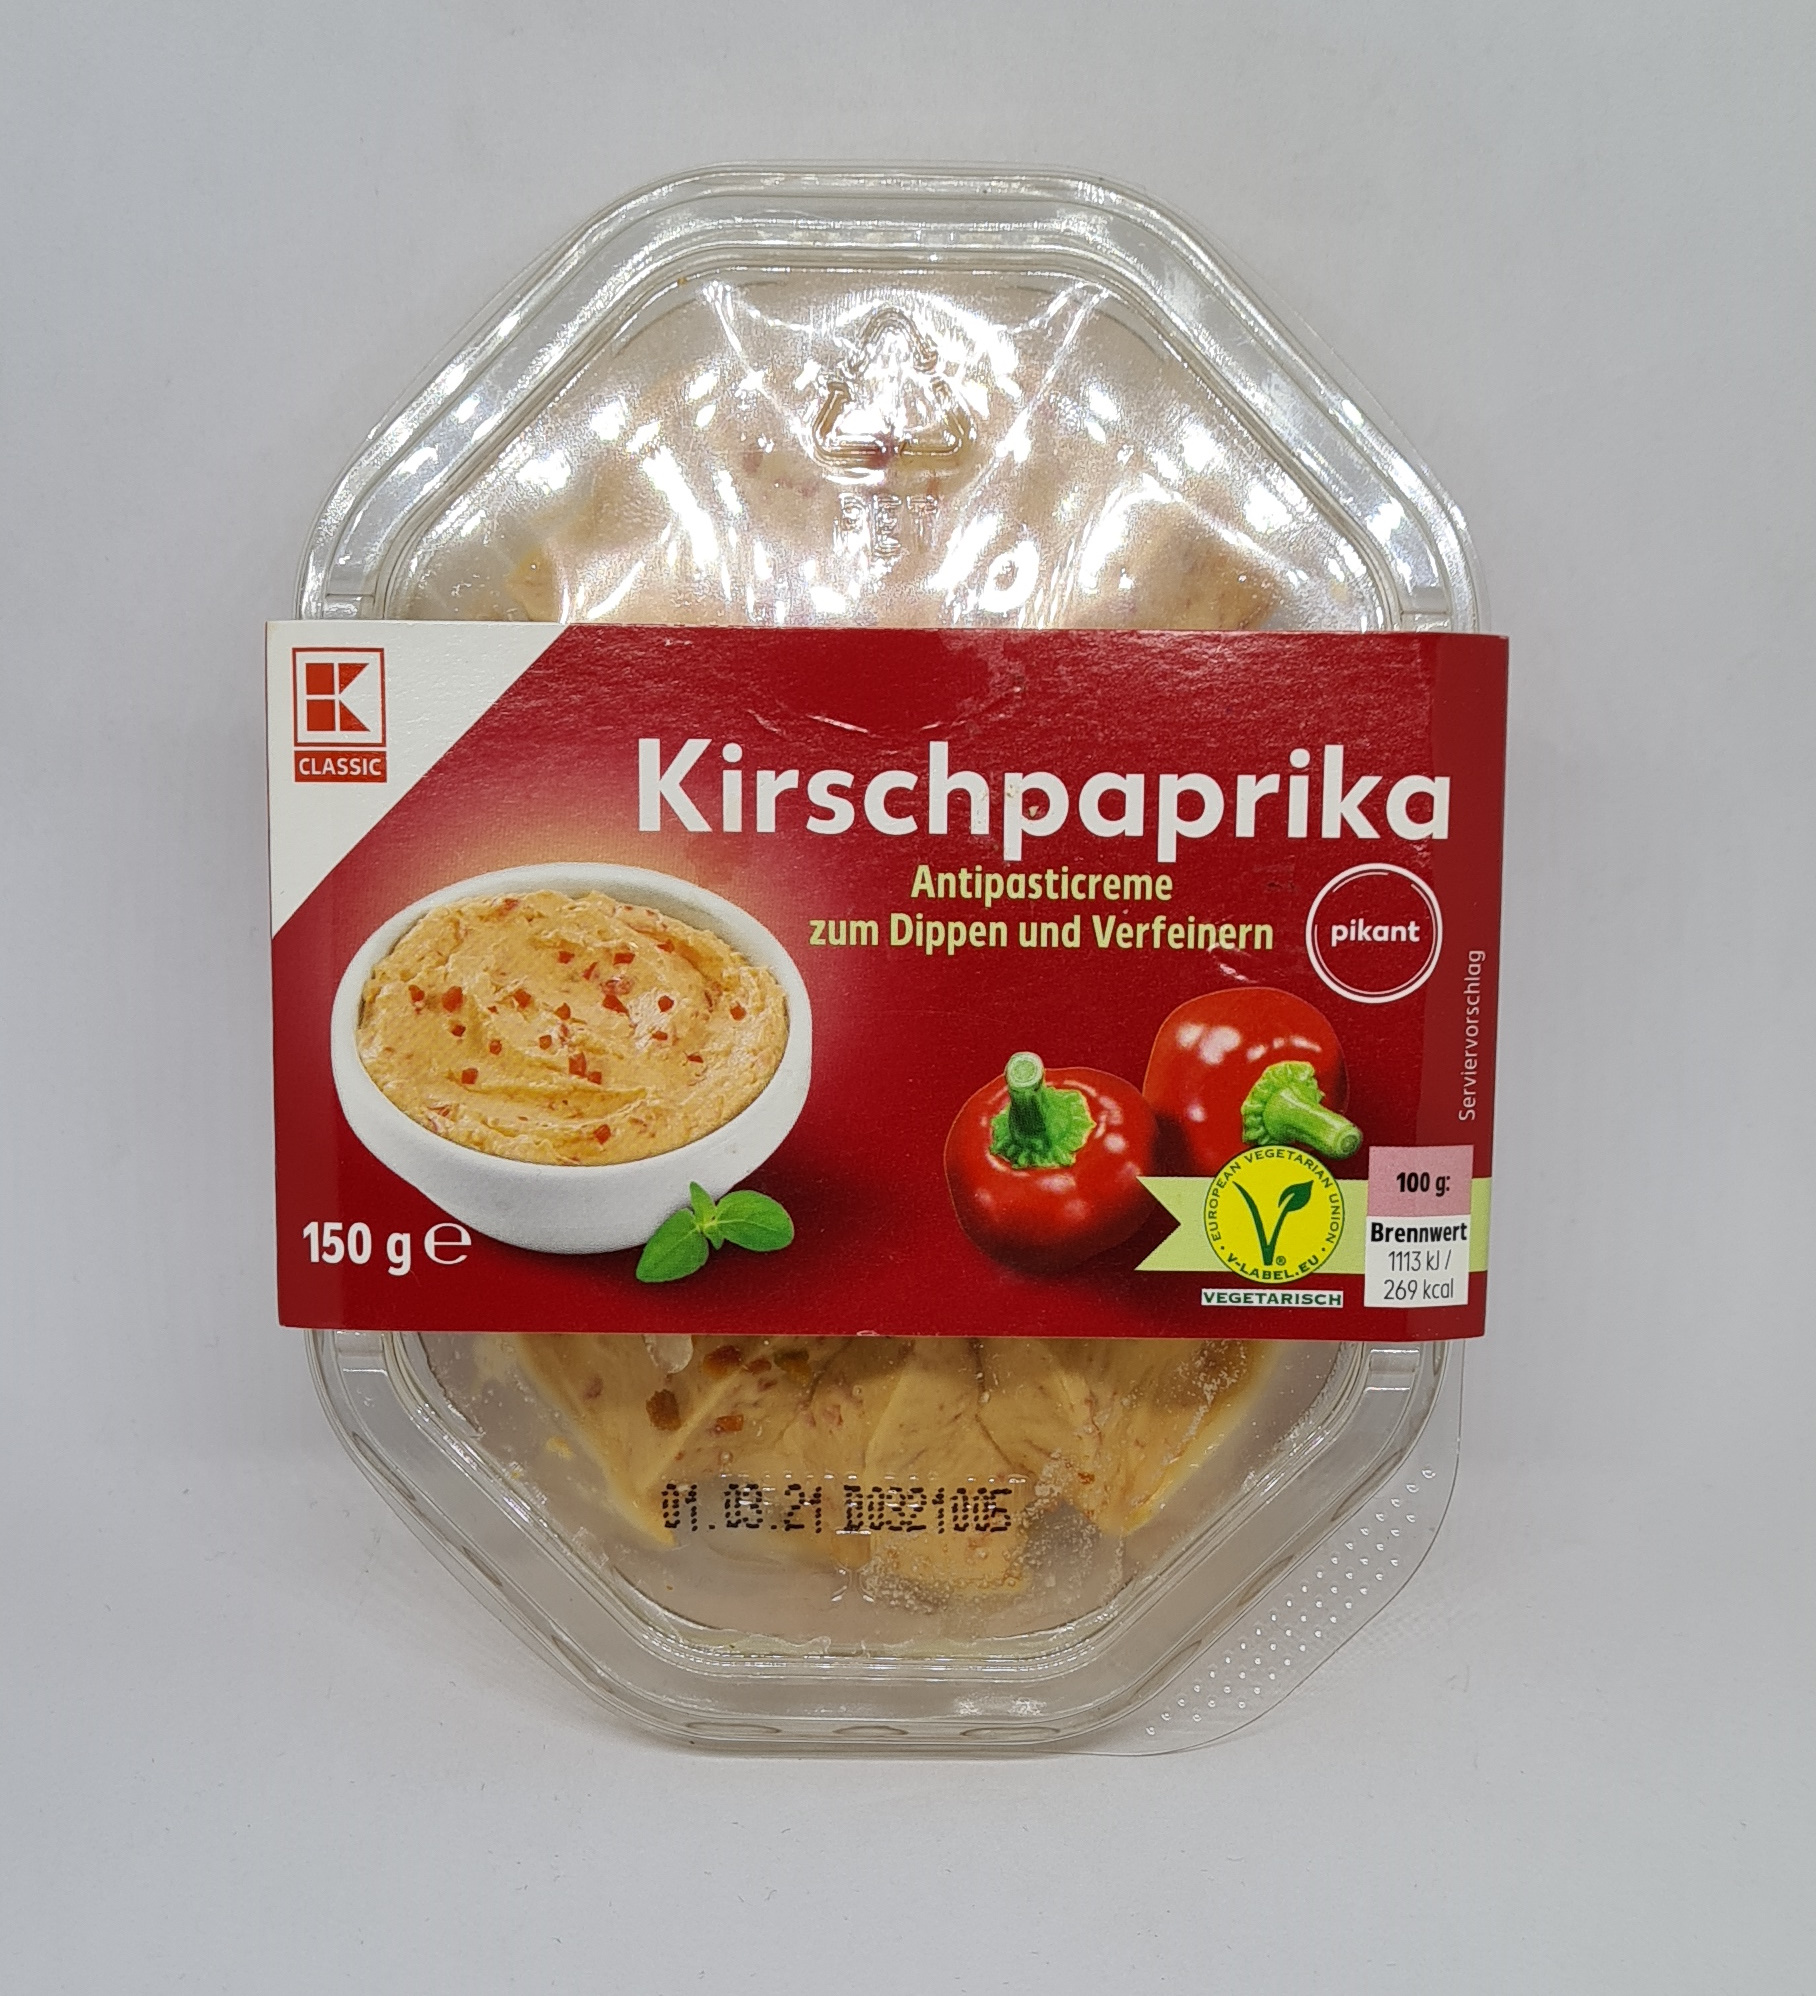 Chilihead77.de: Kaufland - K-Classic Kirschpaprika Antipasticreme